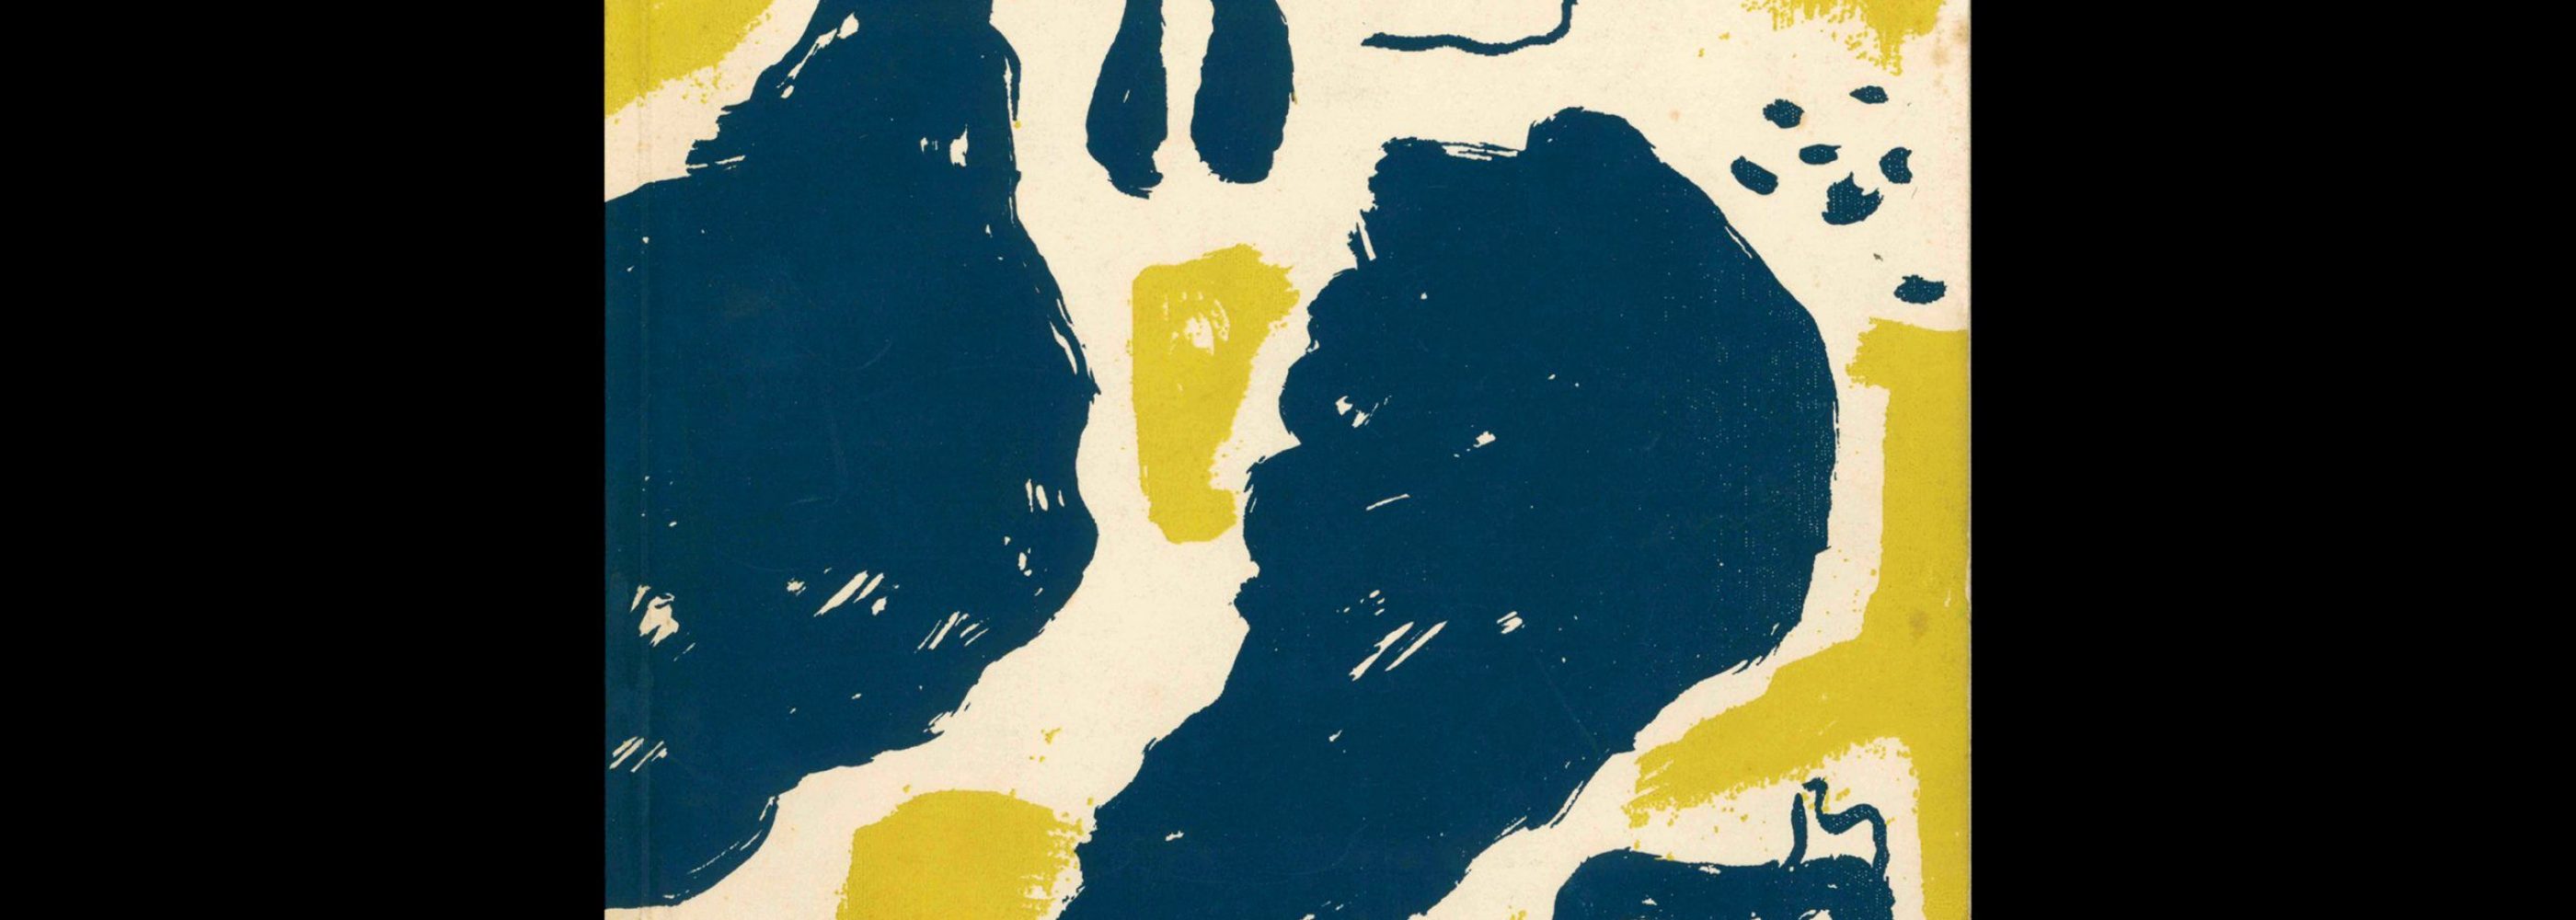 Gebrauchsgraphik, 4, 1954. Cover design by Willi Baumeister